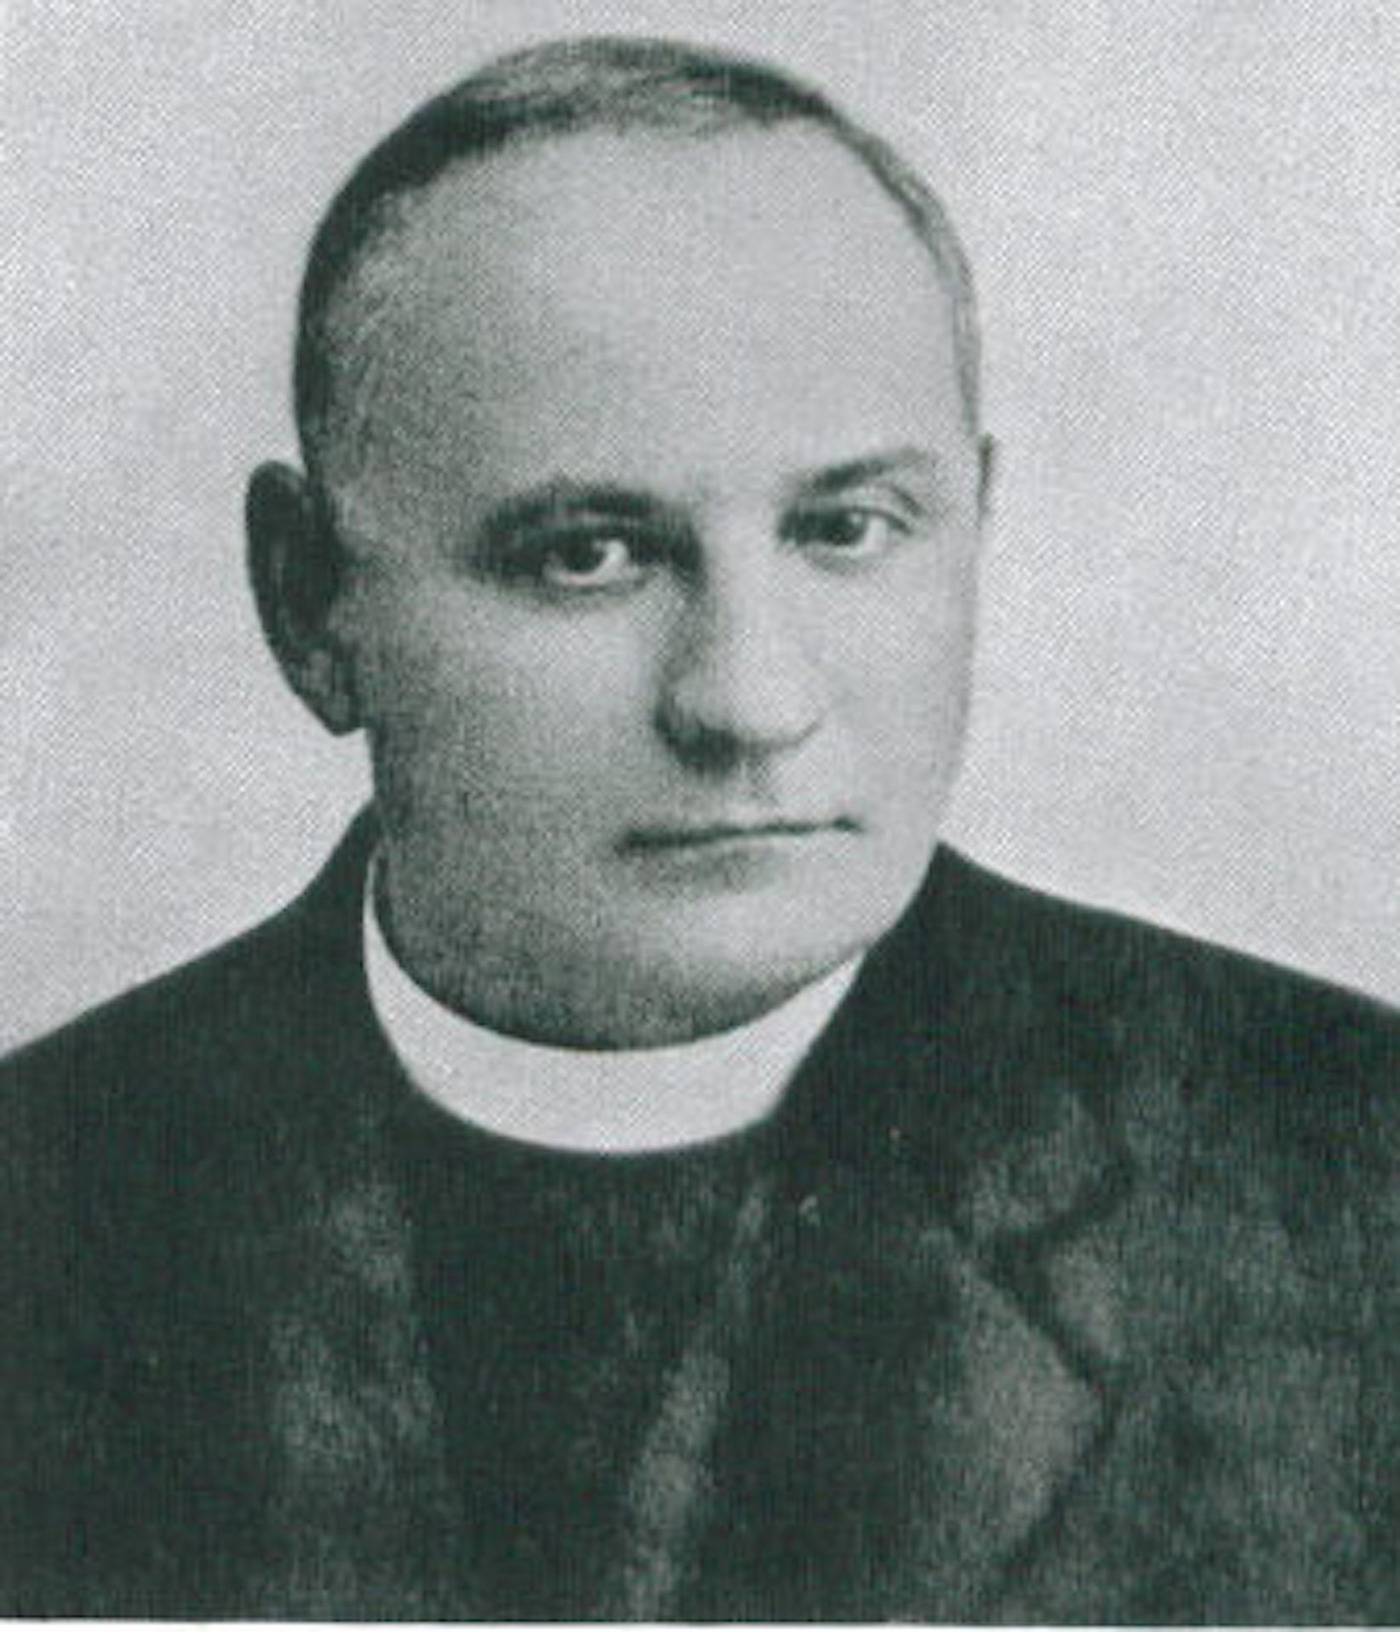 Father Garbottini